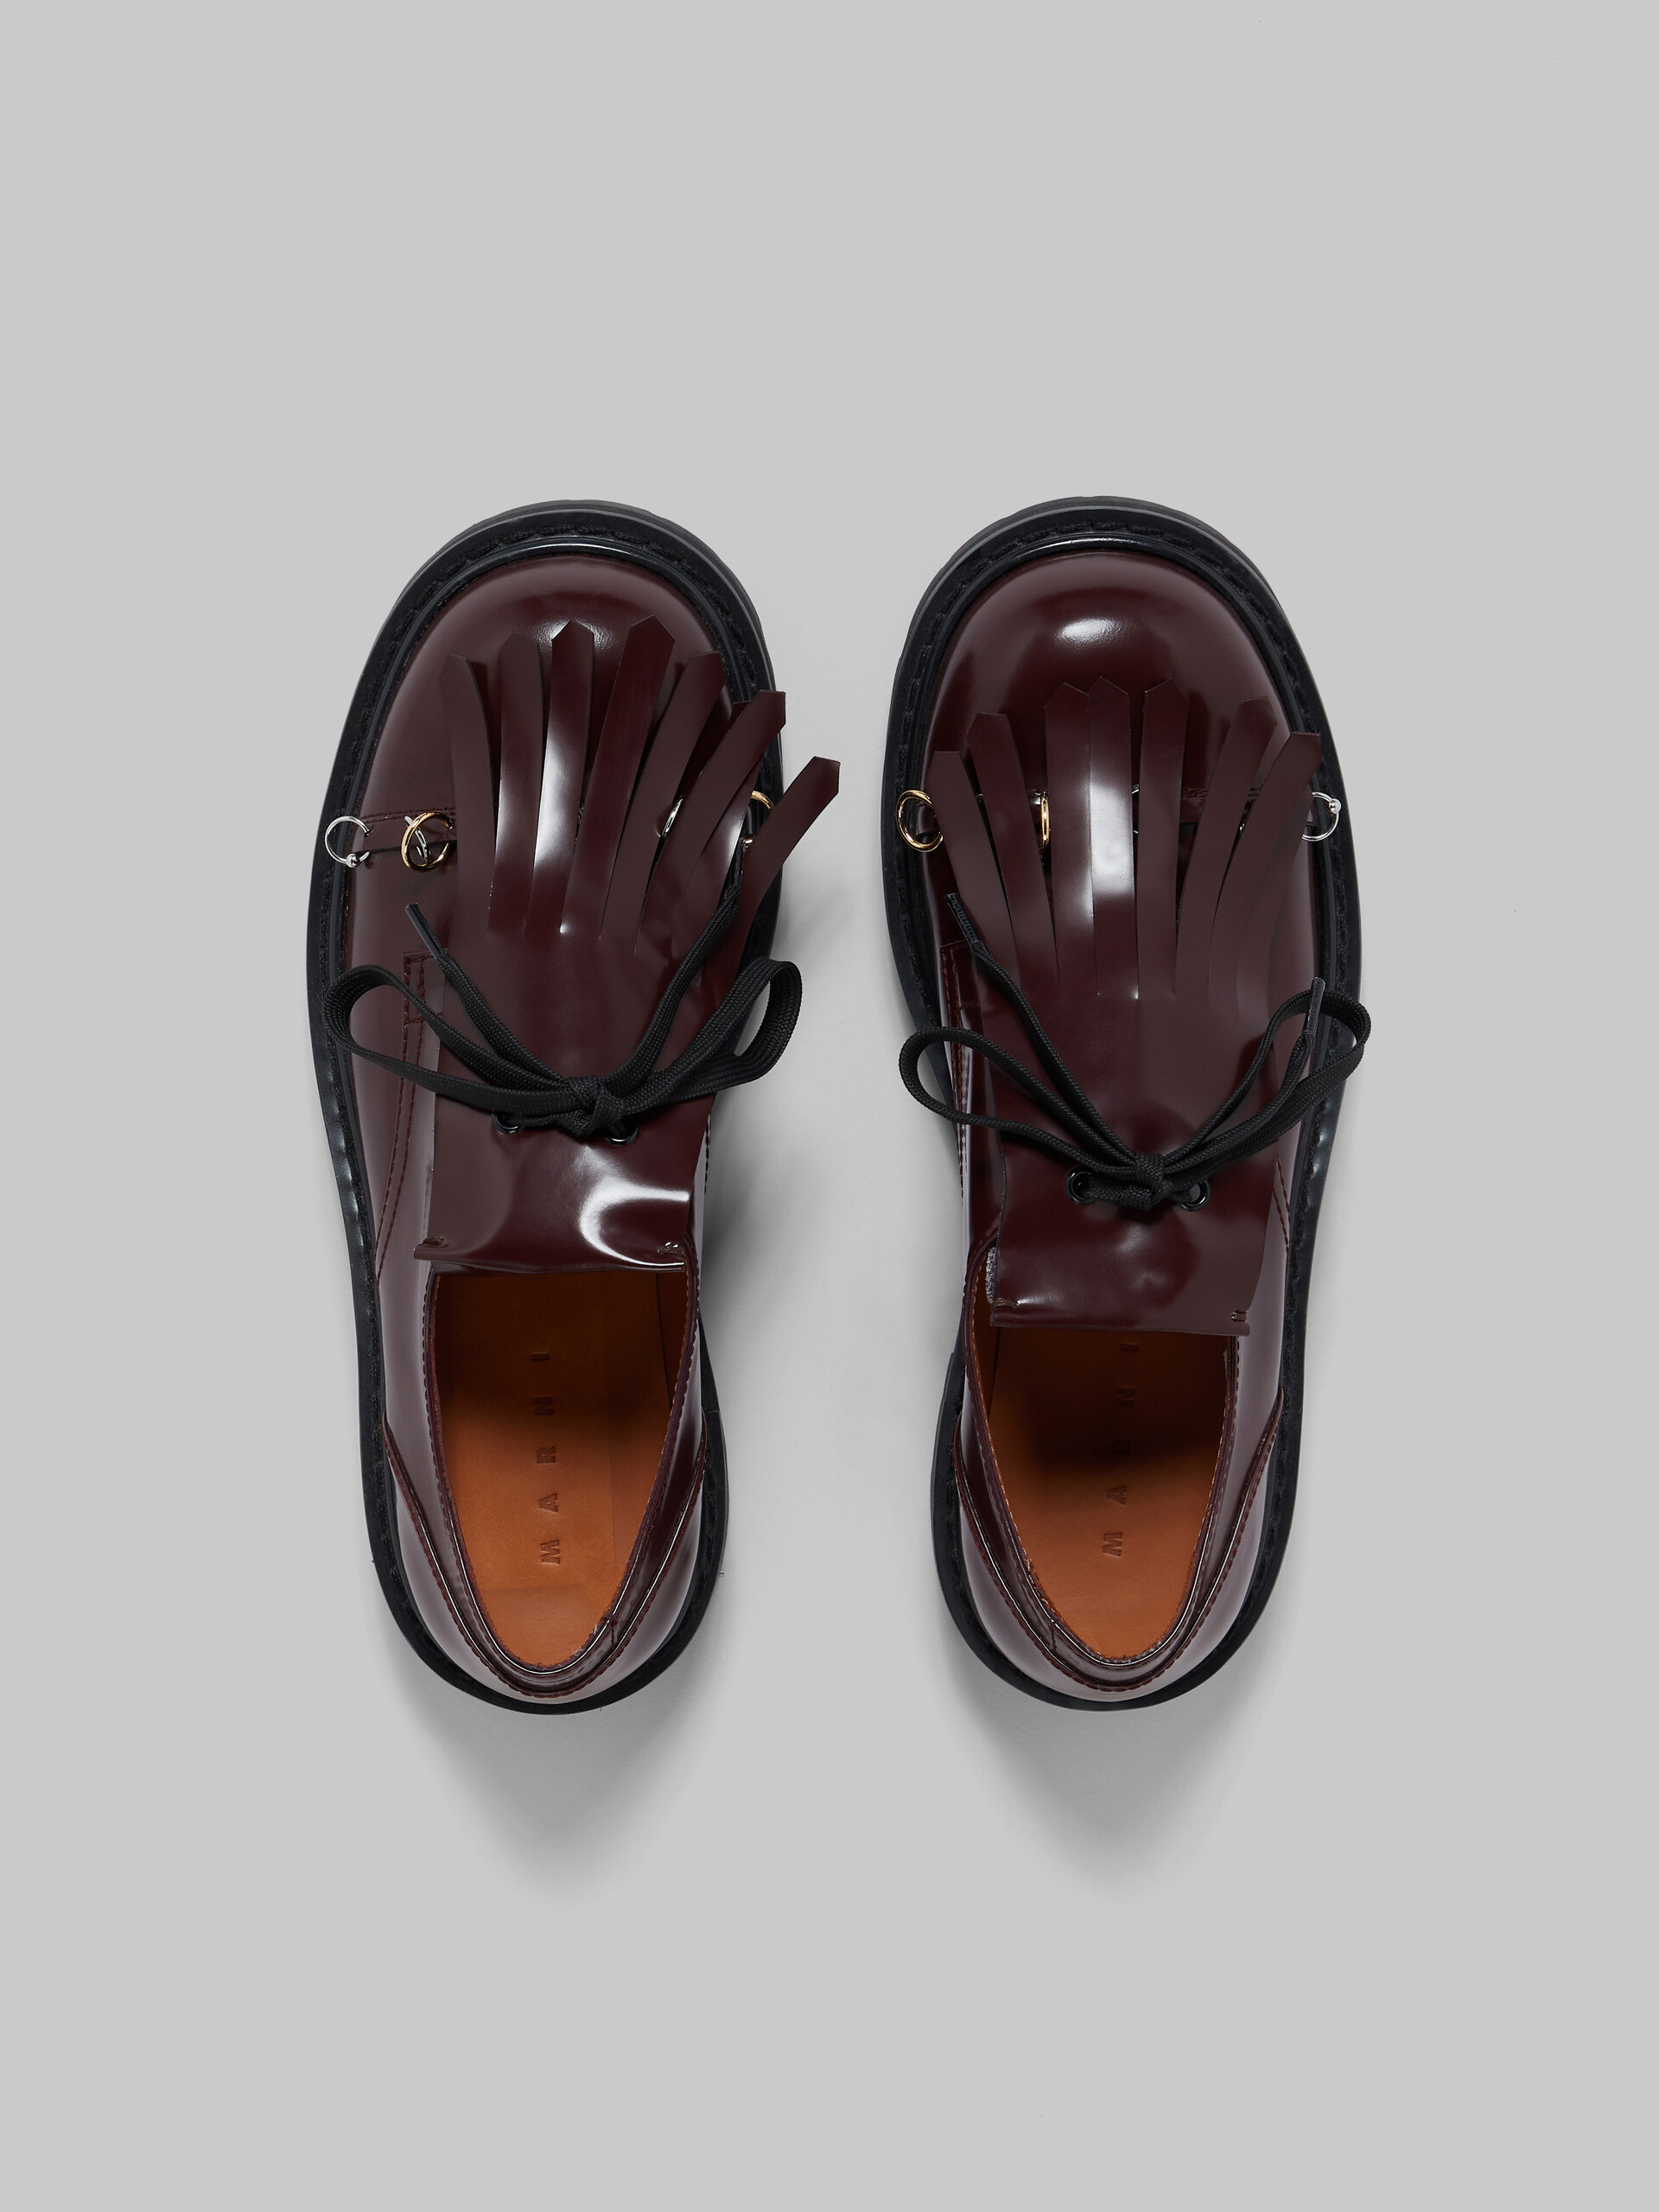 Black leather Dada derby shoe with maxi fringe - Lace-ups - Image 4